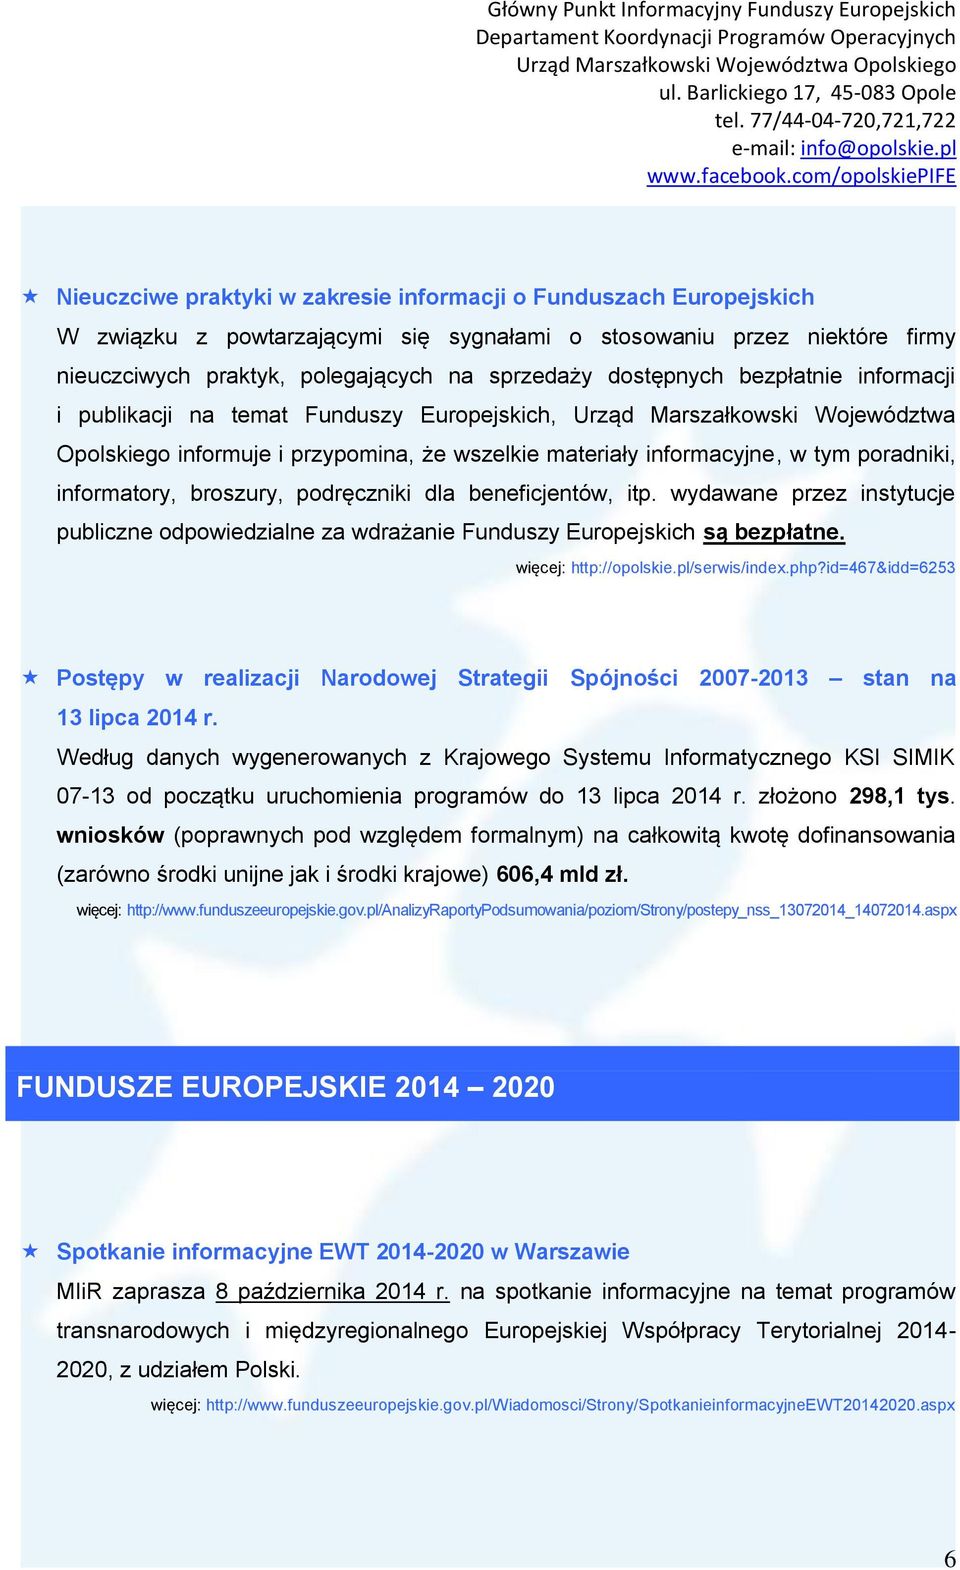 informatory, broszury, podręczniki dla beneficjentów, itp. wydawane przez instytucje publiczne odpowiedzialne za wdrażanie Funduszy Europejskich są bezpłatne. więcej: http://opolskie.pl/serwis/index.